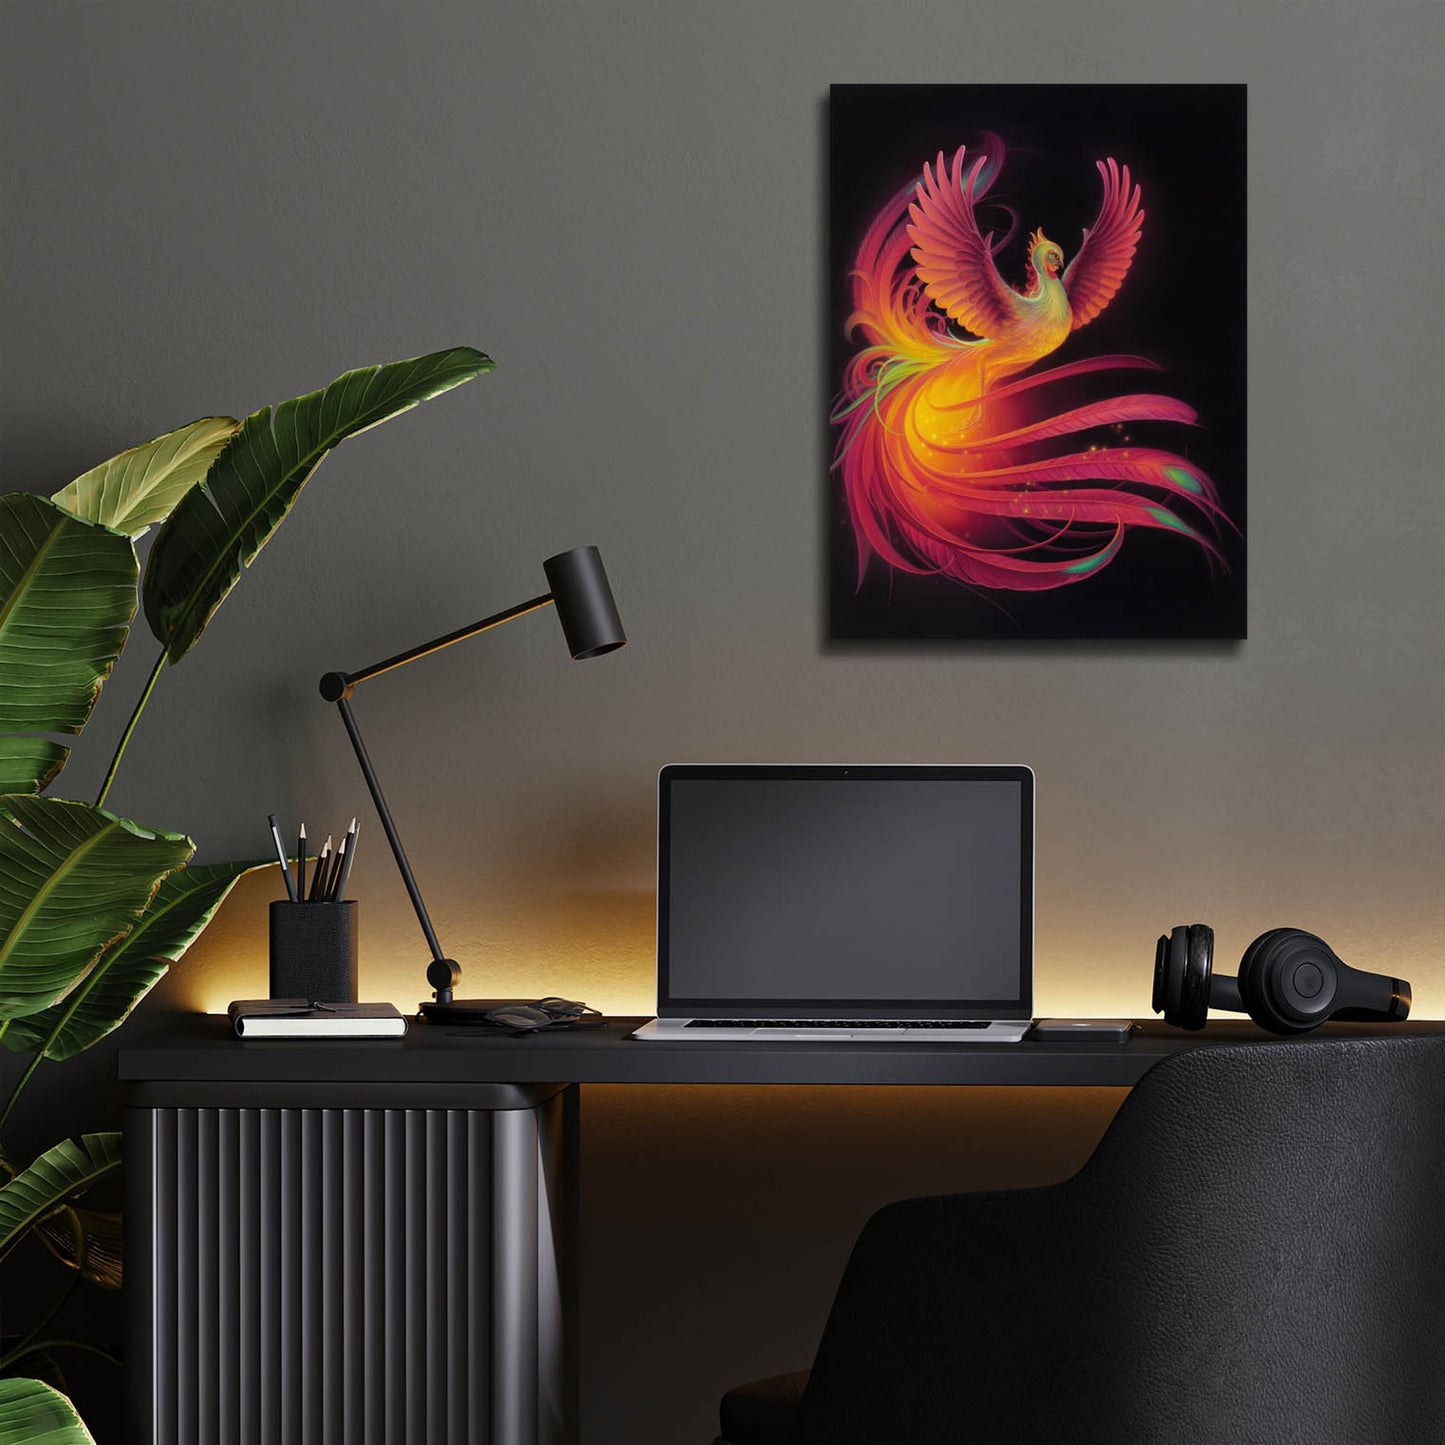 Epic Art 'Phoenix' by Kirk Reinert, Acrylic Glass Wall Art,12x16